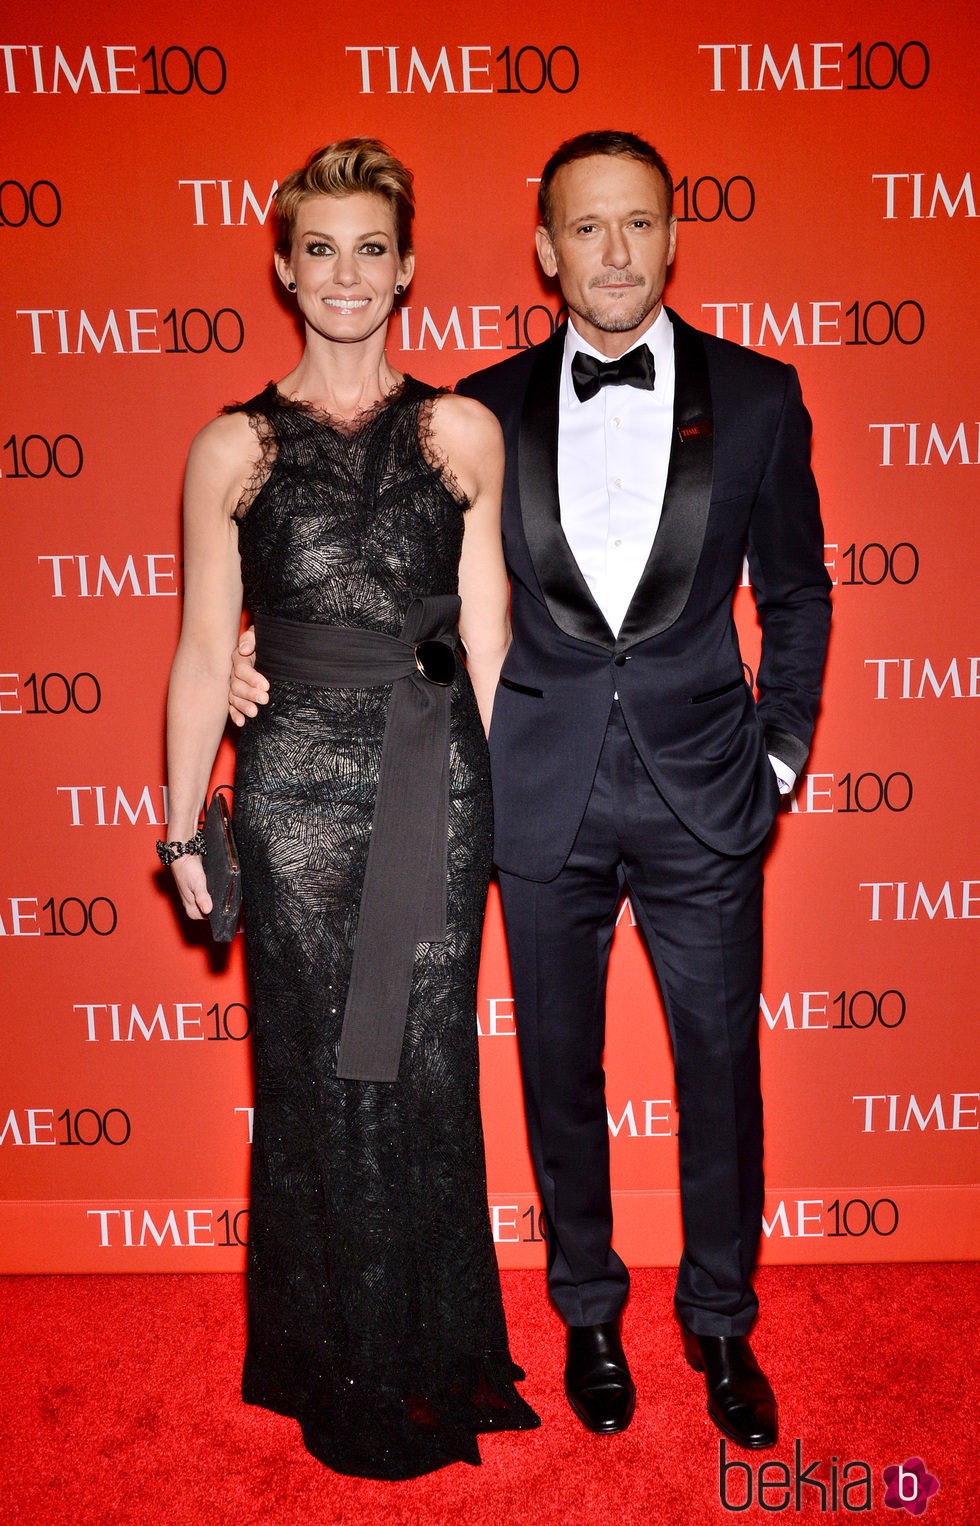 Faith Hill con Tim McGraw en la Gala Time de los 100 más influyentes de 2015